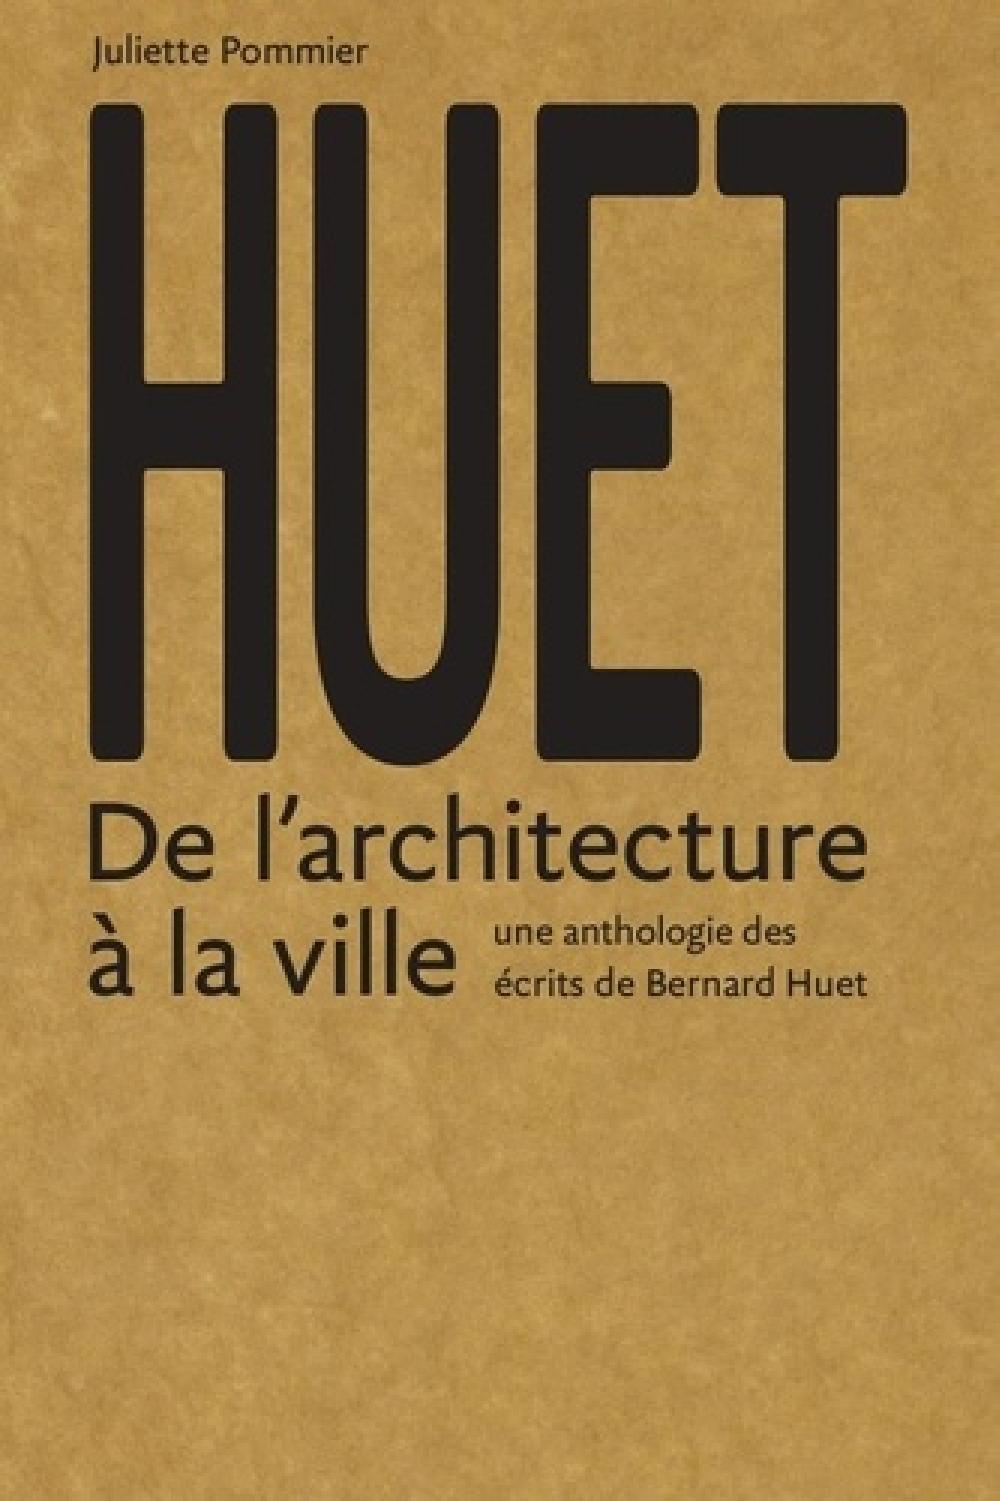 Huet - Anthologie des écrits théoriques, critiques et pédagogiques de Bernard Huet